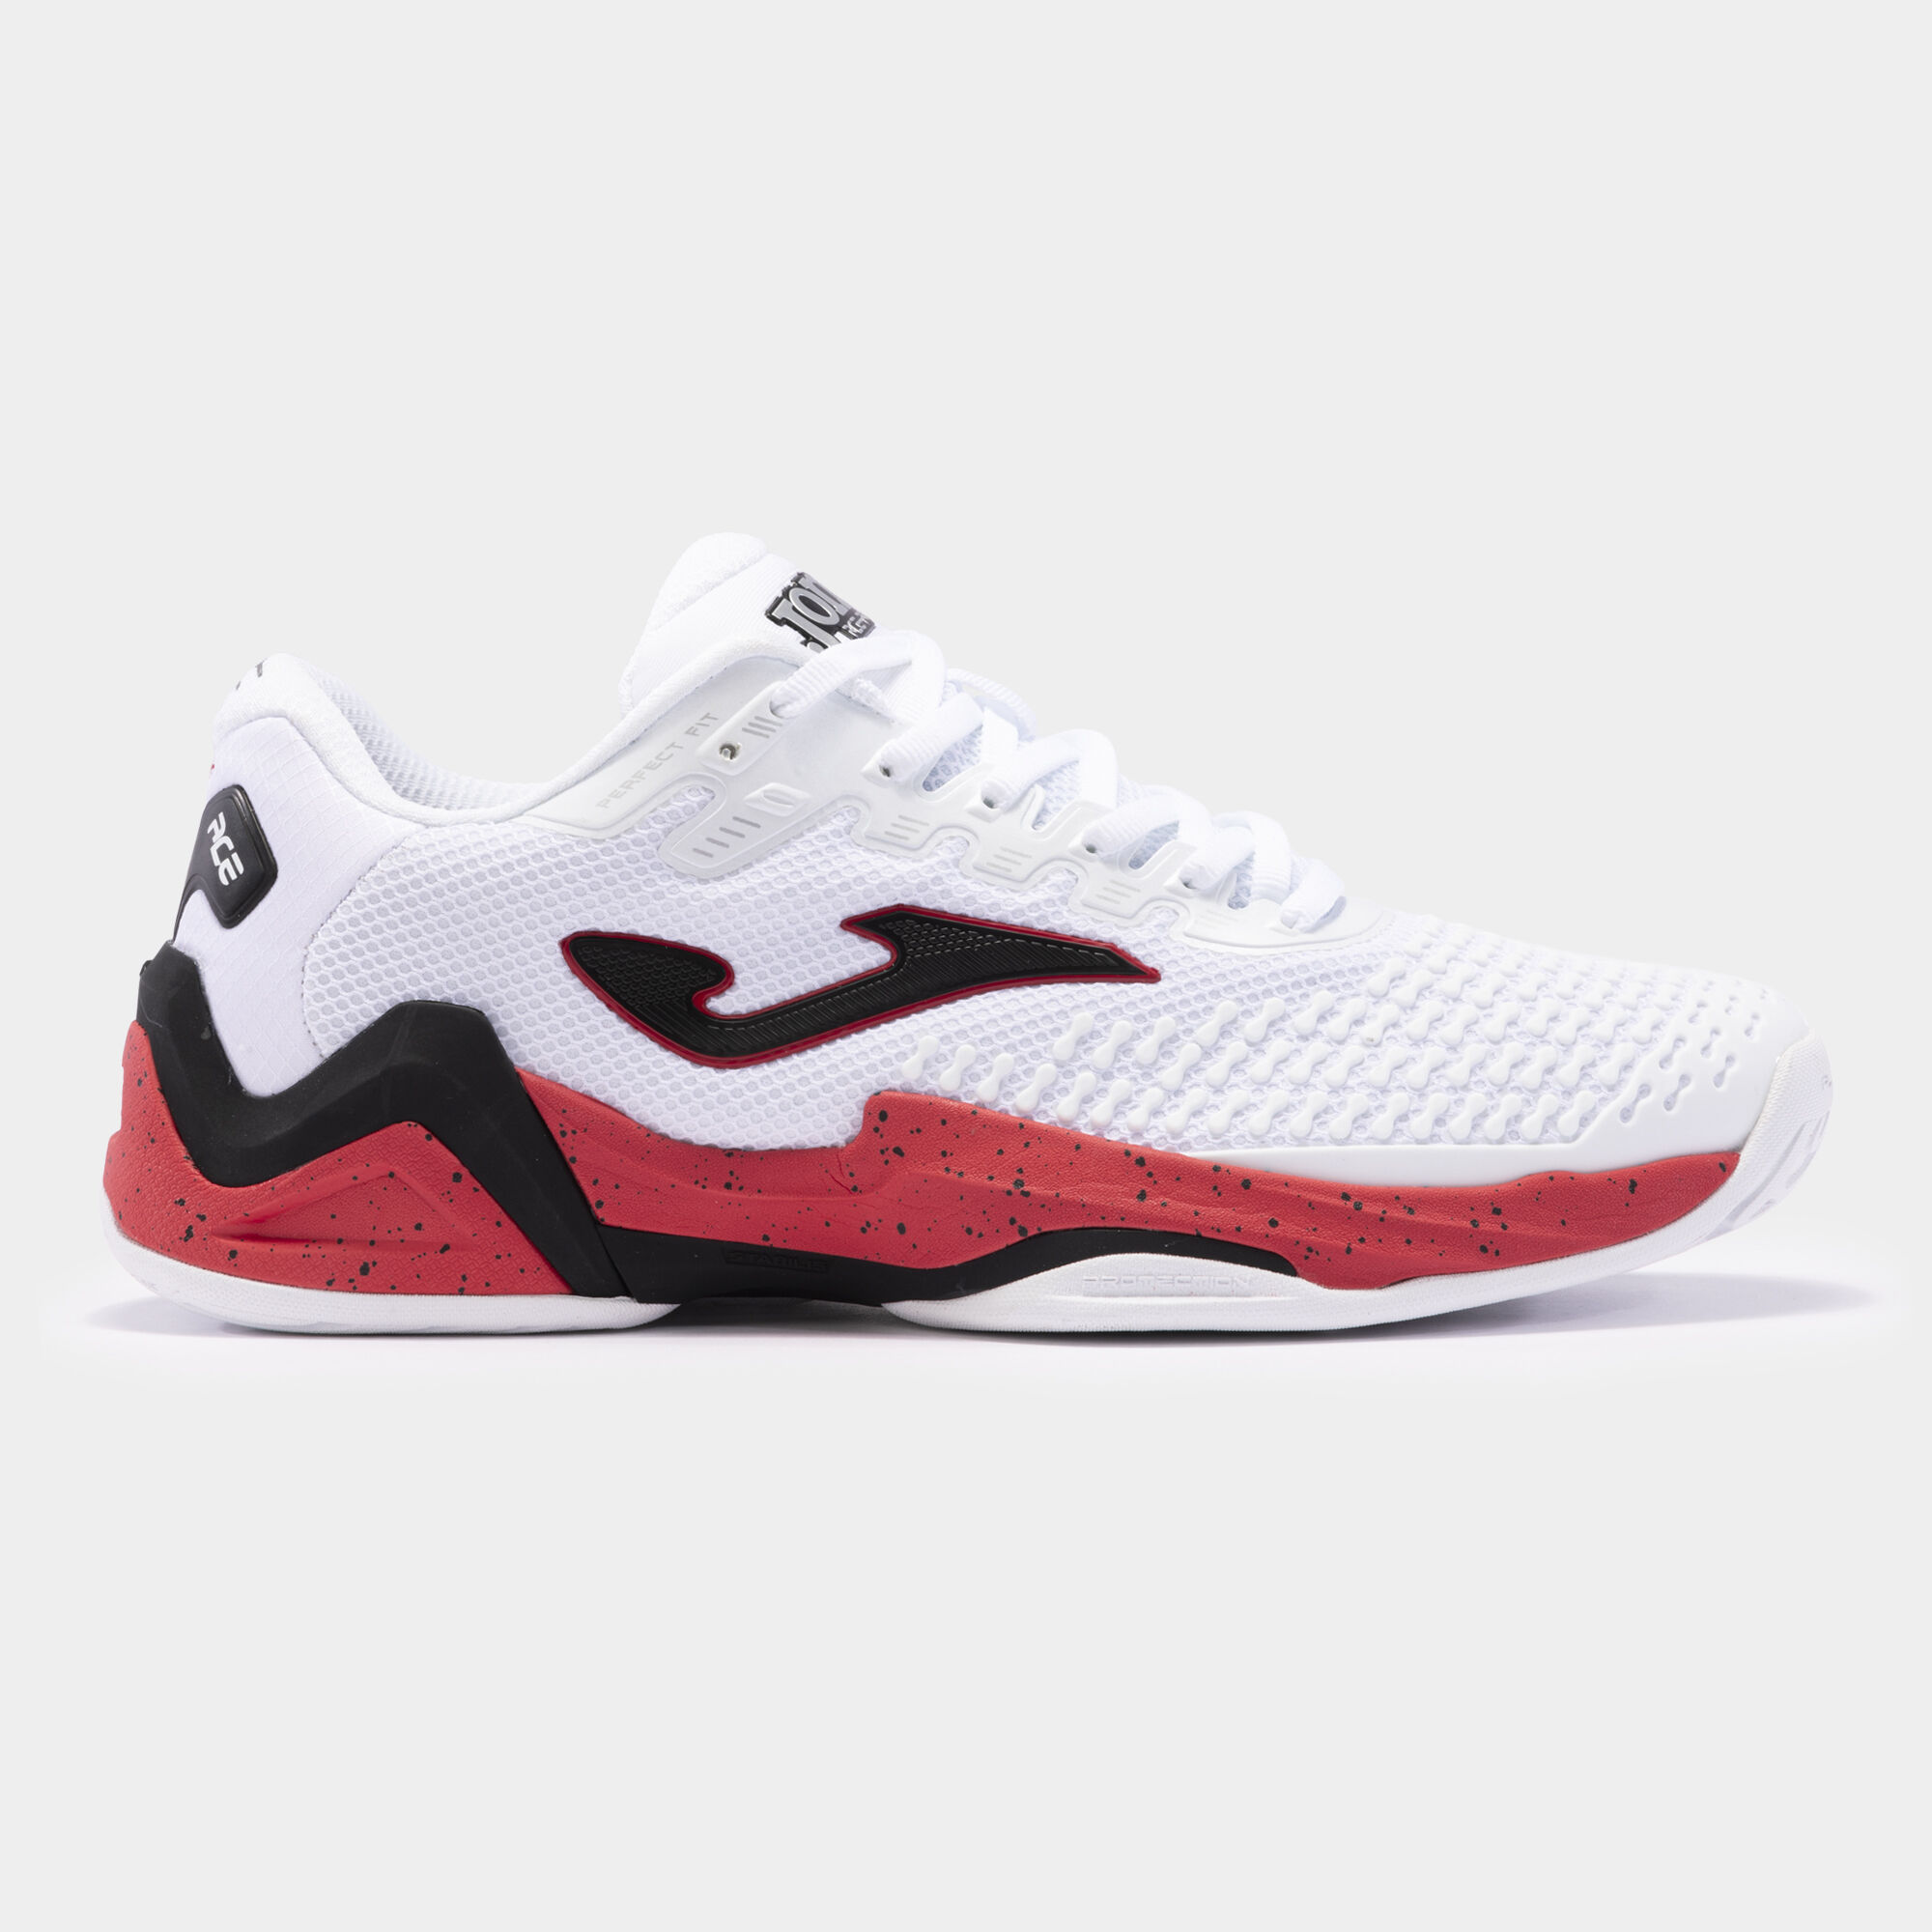 Chaussure de tennis homme Joma TPoint Clay coloris rouge fluo / noir